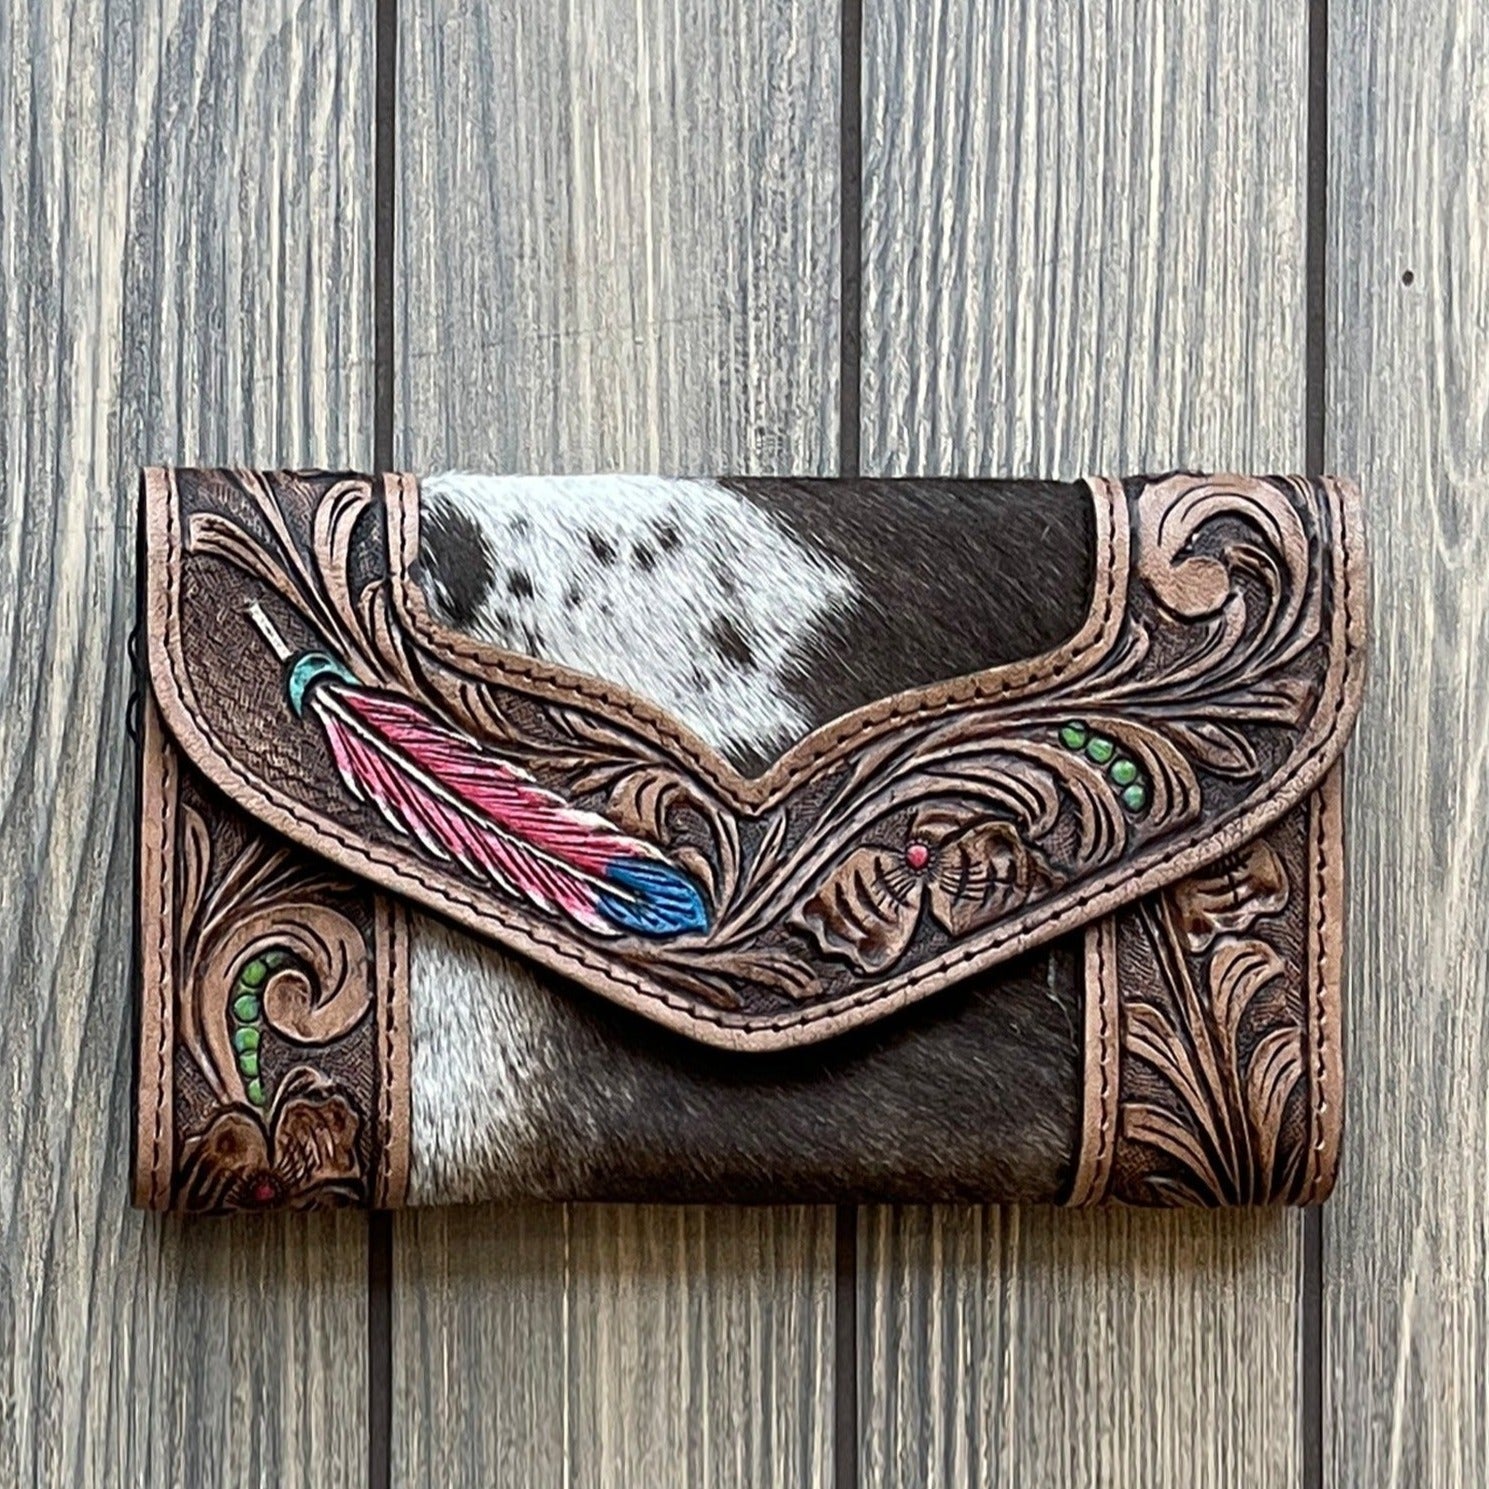 Elegant Western Carved Leather Wallet